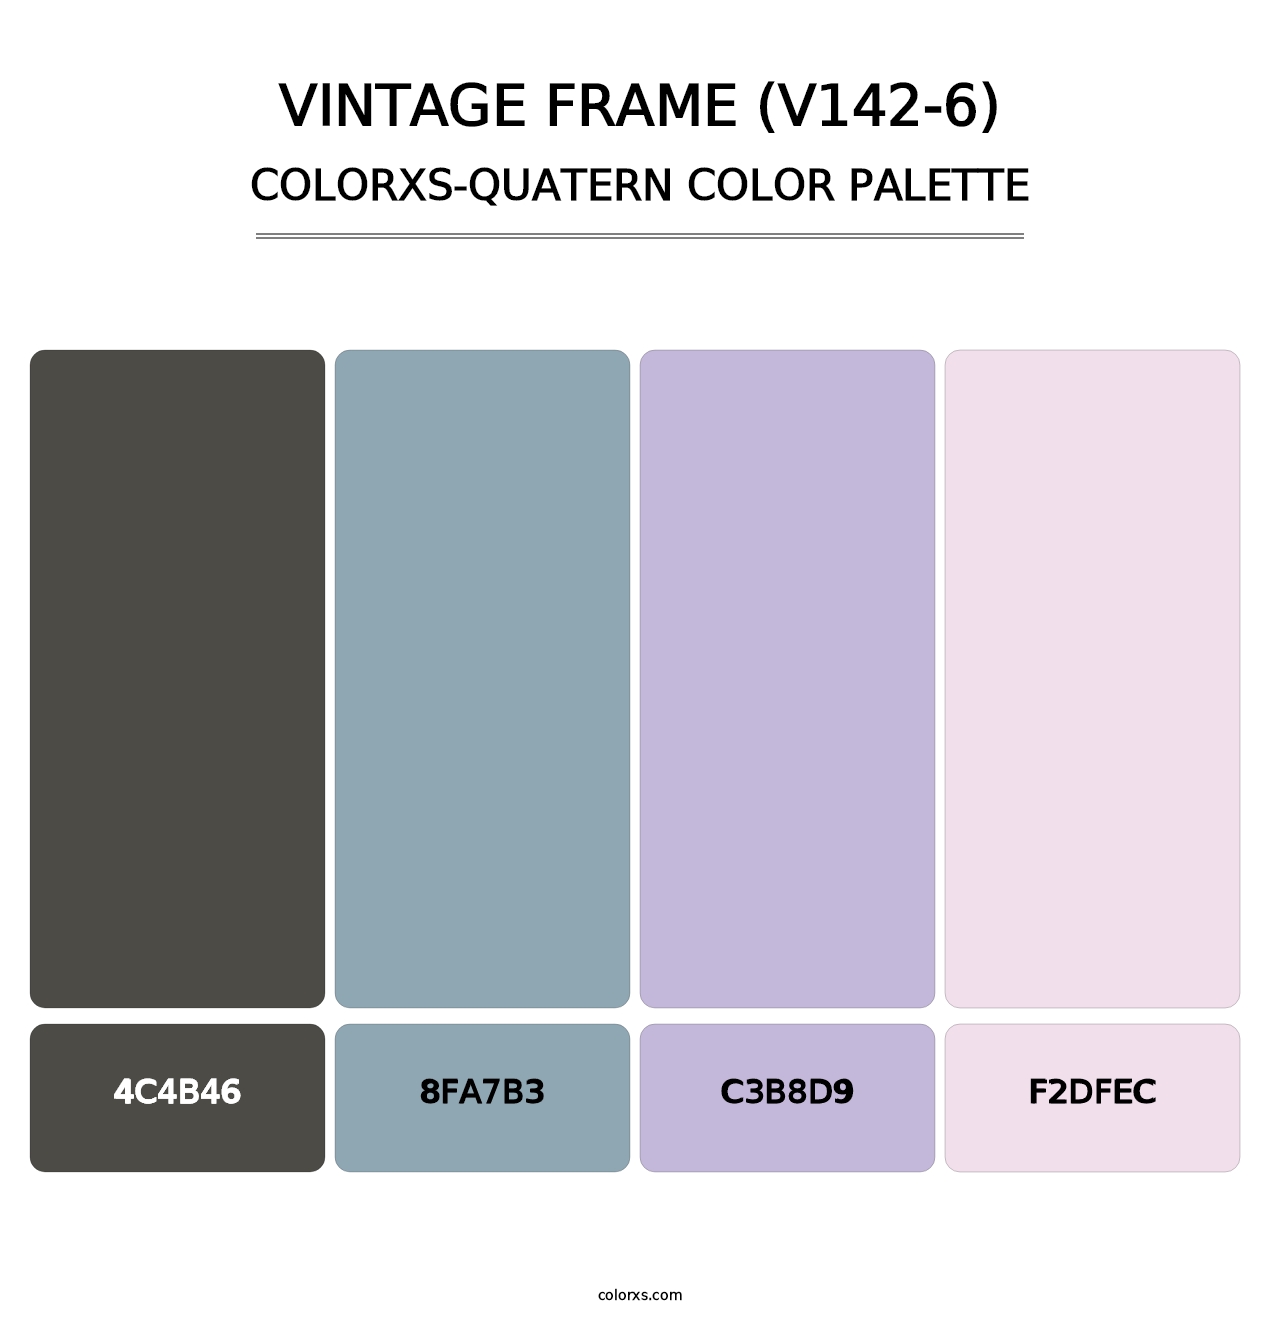 Vintage Frame (V142-6) - Colorxs Quatern Palette